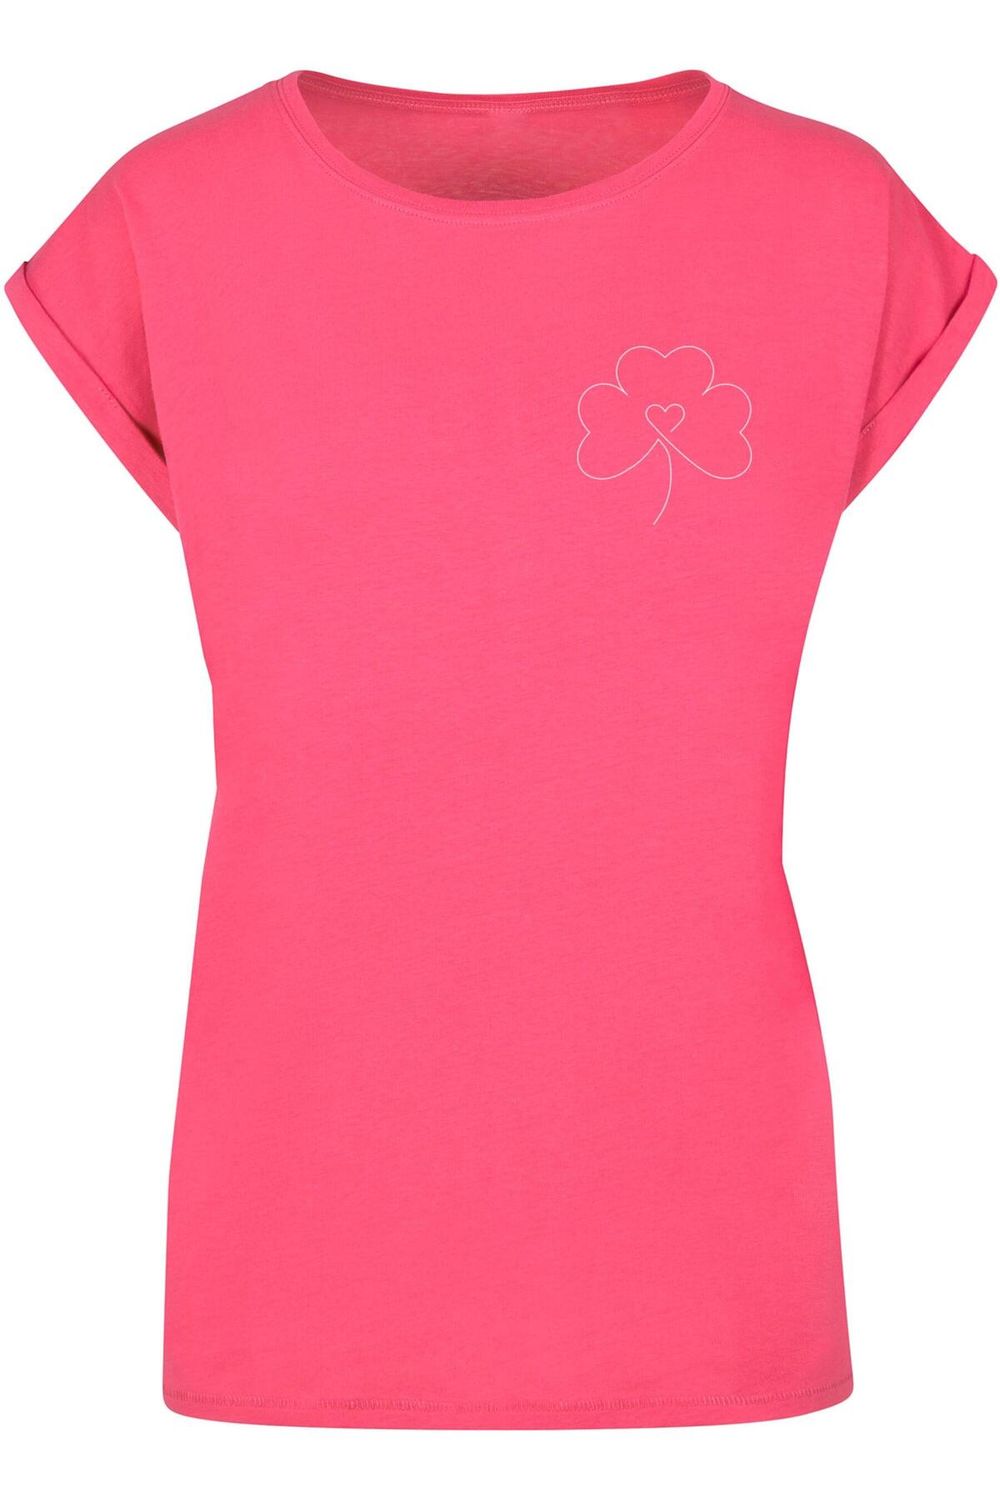 Merchcode Damen Ladies Spring - Leaf Clover Flower T-Shirt - Trendyol